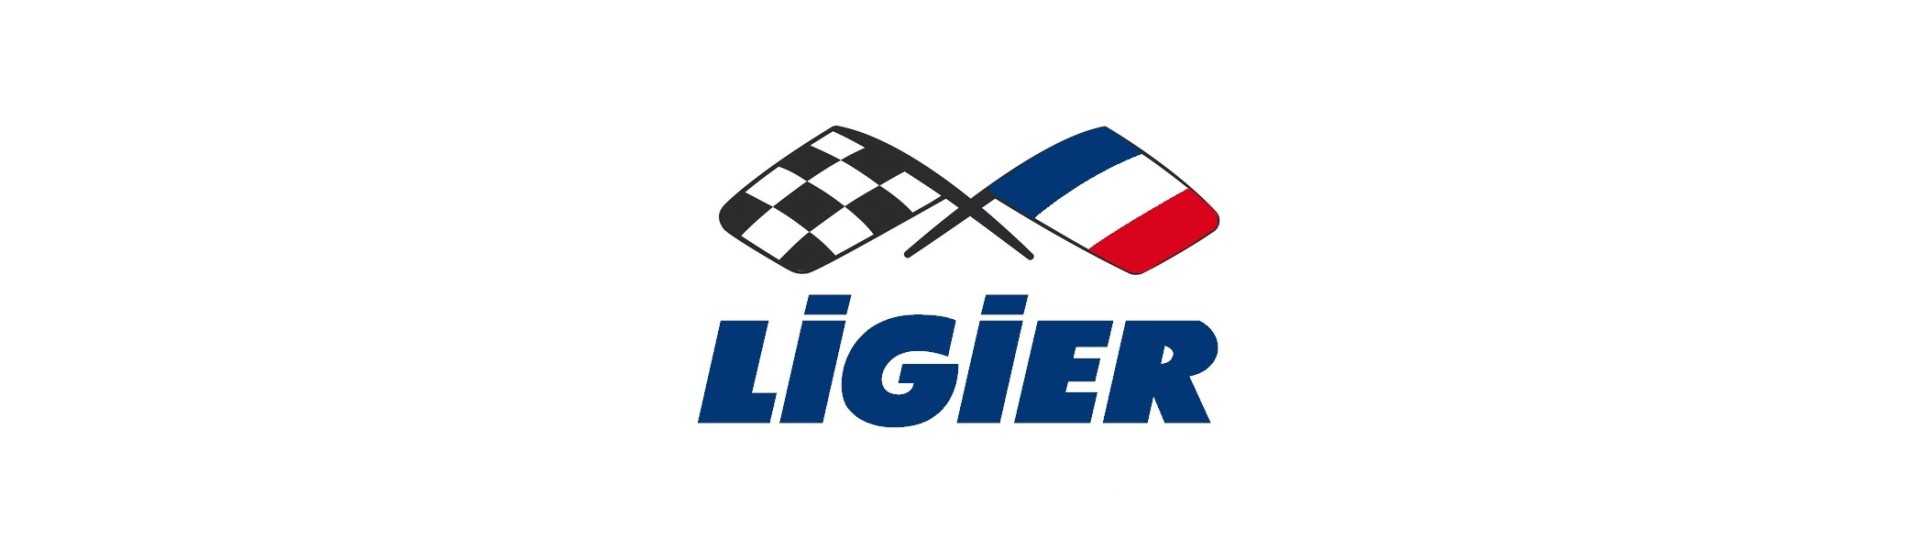 Cesta de rueda de repuesto al mejor precio para un coche sin carnet Ligier